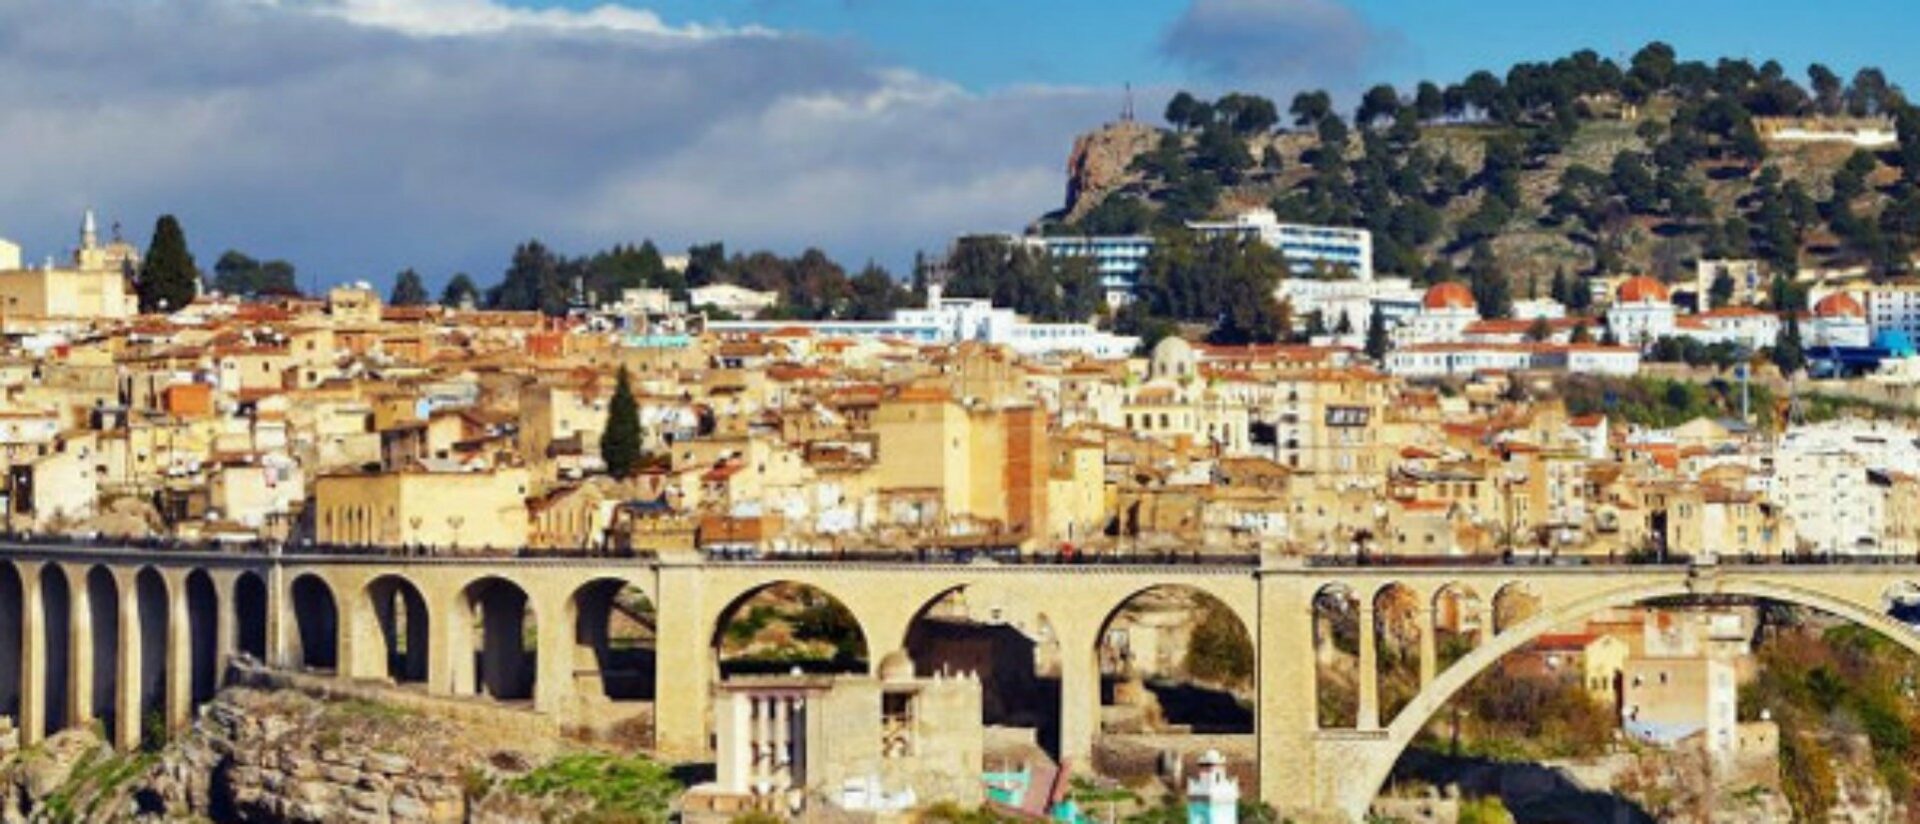 La ville de Constantine, à l'Est de l'Algérie © diocèse de Constantine